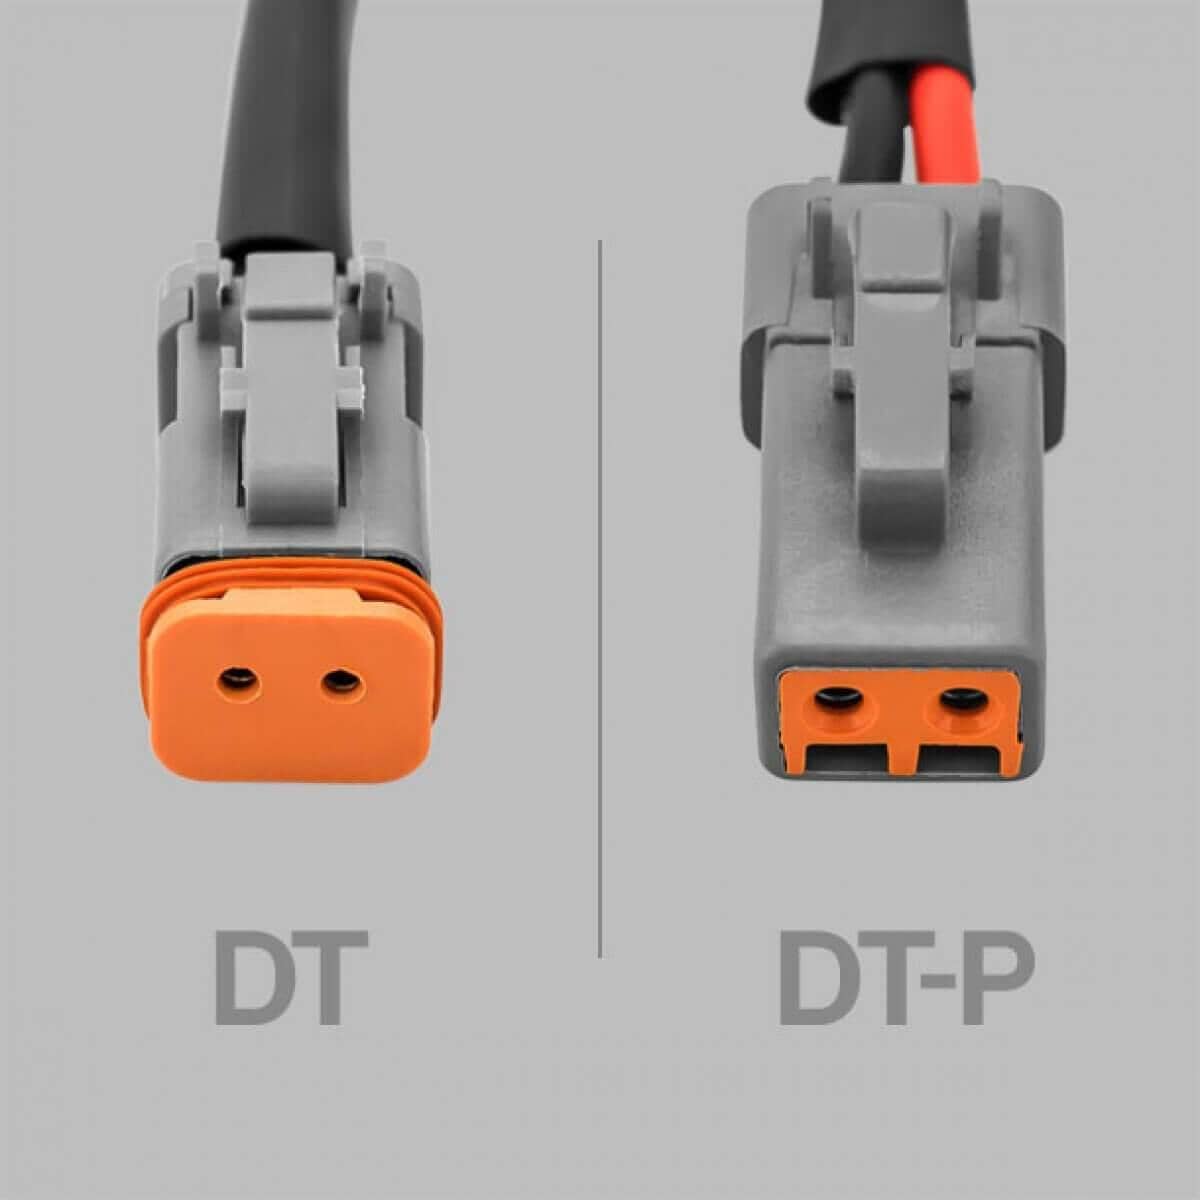 STEDI 2 to 1 Deutsch Connector / Splitter | 2 Lights with 1 Wiring Harness 1.5m - NZ Offroader